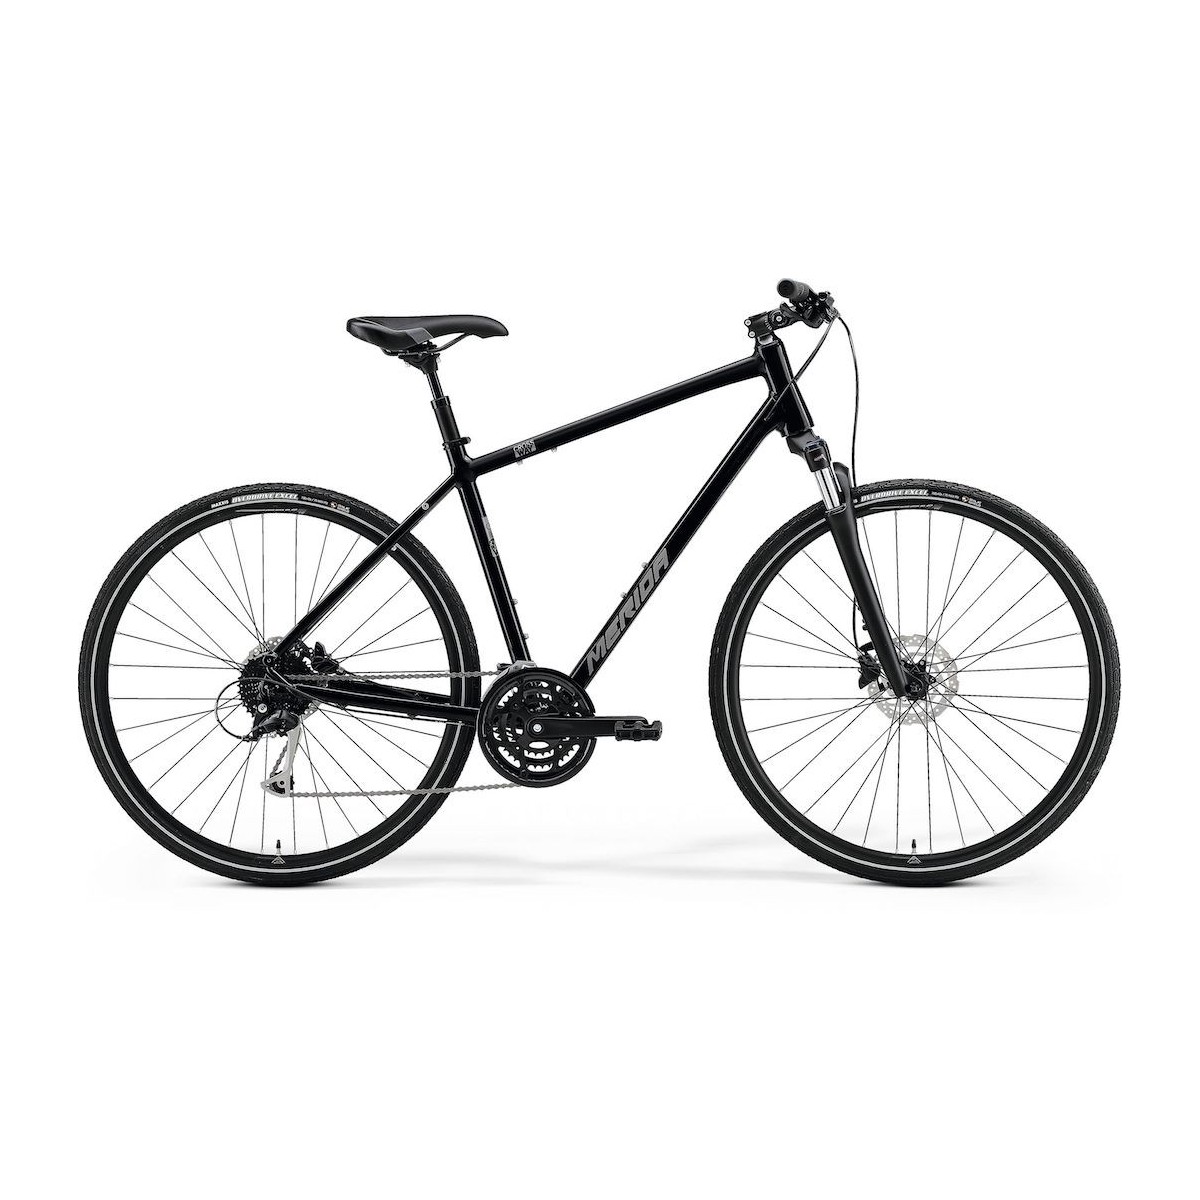 MERIDA CROSSWAY 100 bicycle - black